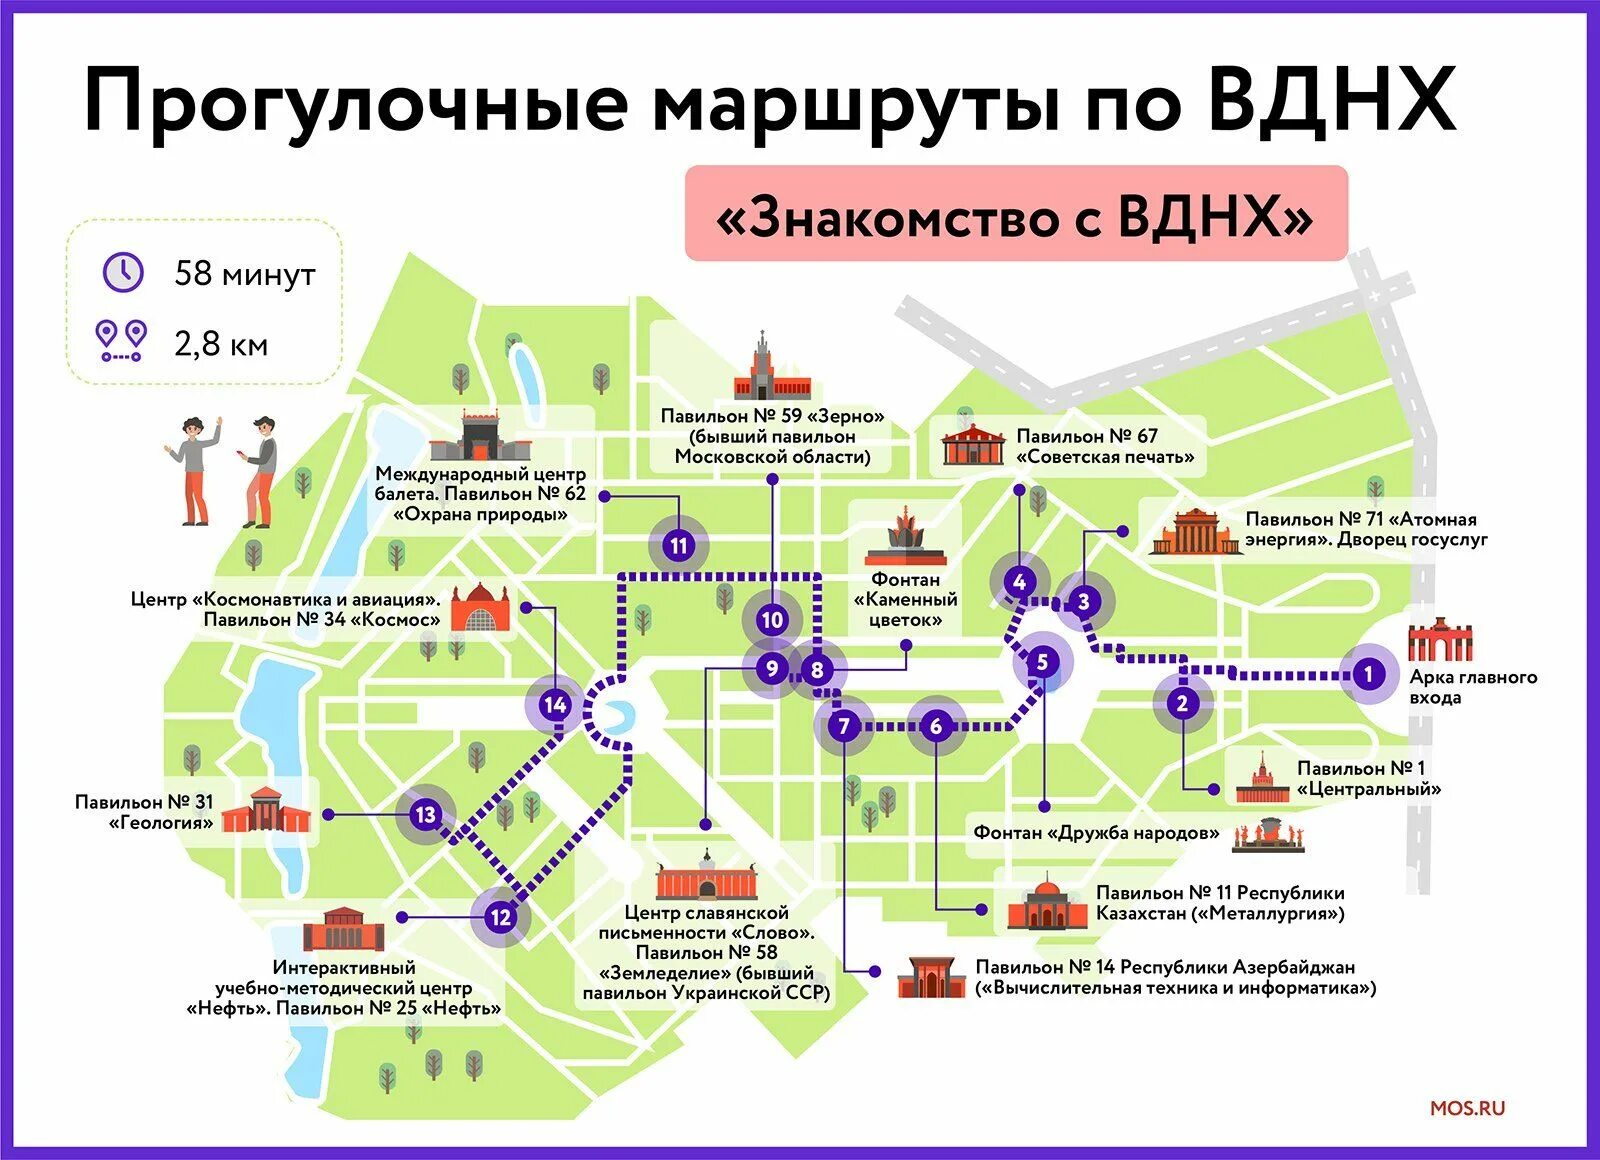 Где в москве производится. Карта парка ВДНХ В Москве. Схема ВДНХ В Москве. Территория парка ВДНХ. Прогулочные маршруты по ВДНХ.